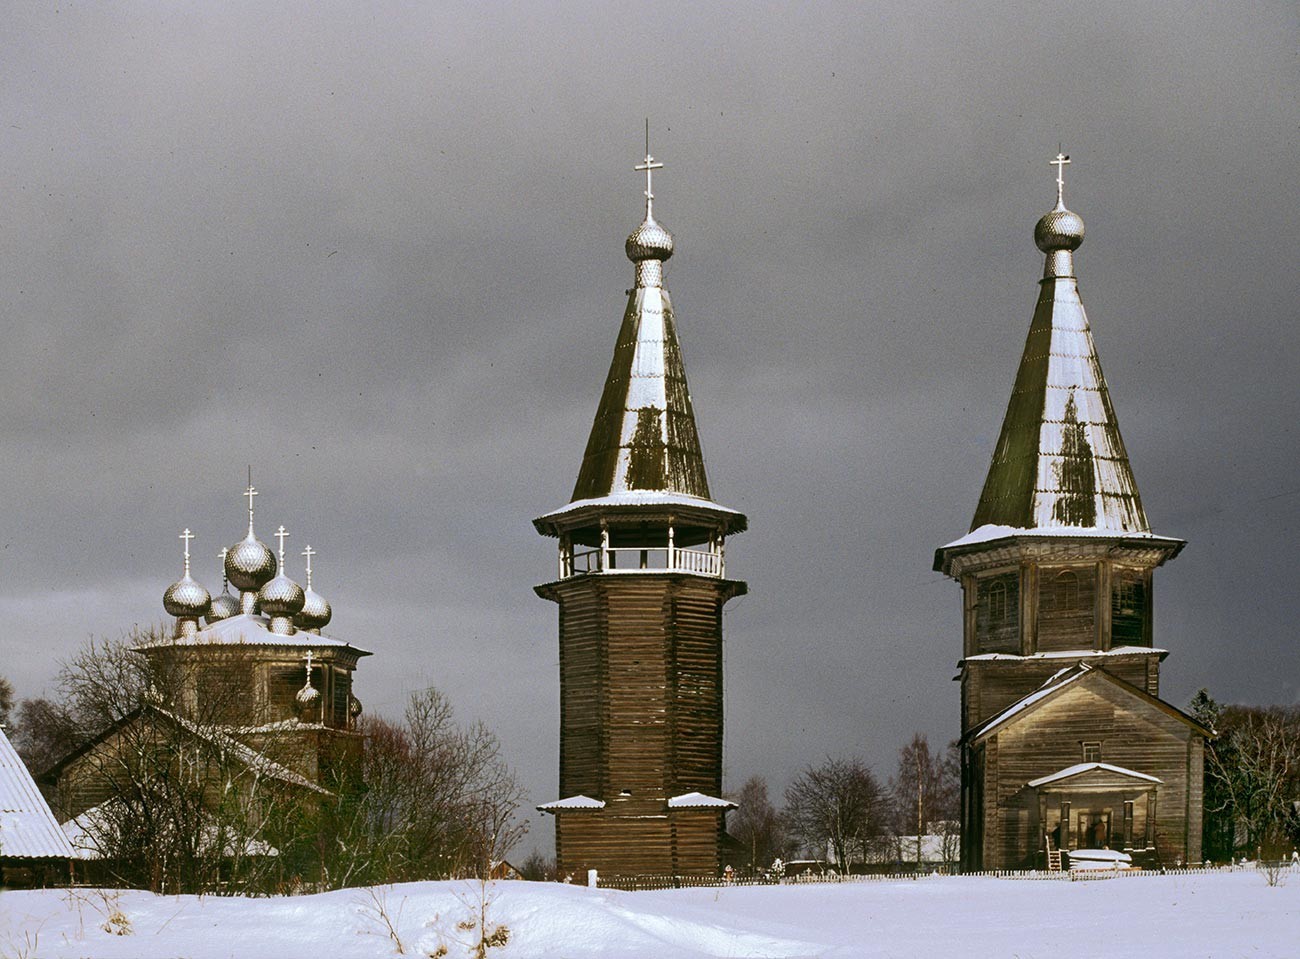 Ljadini. Od leve: Bogojavljenska cerkev, zvonik, Pokrovska cerkev. Pogled proti zahodu. (Zvonik in Pokrovska cerkev sta bila uničena v požaru, 5. maja 2013) 28. februar 1998
